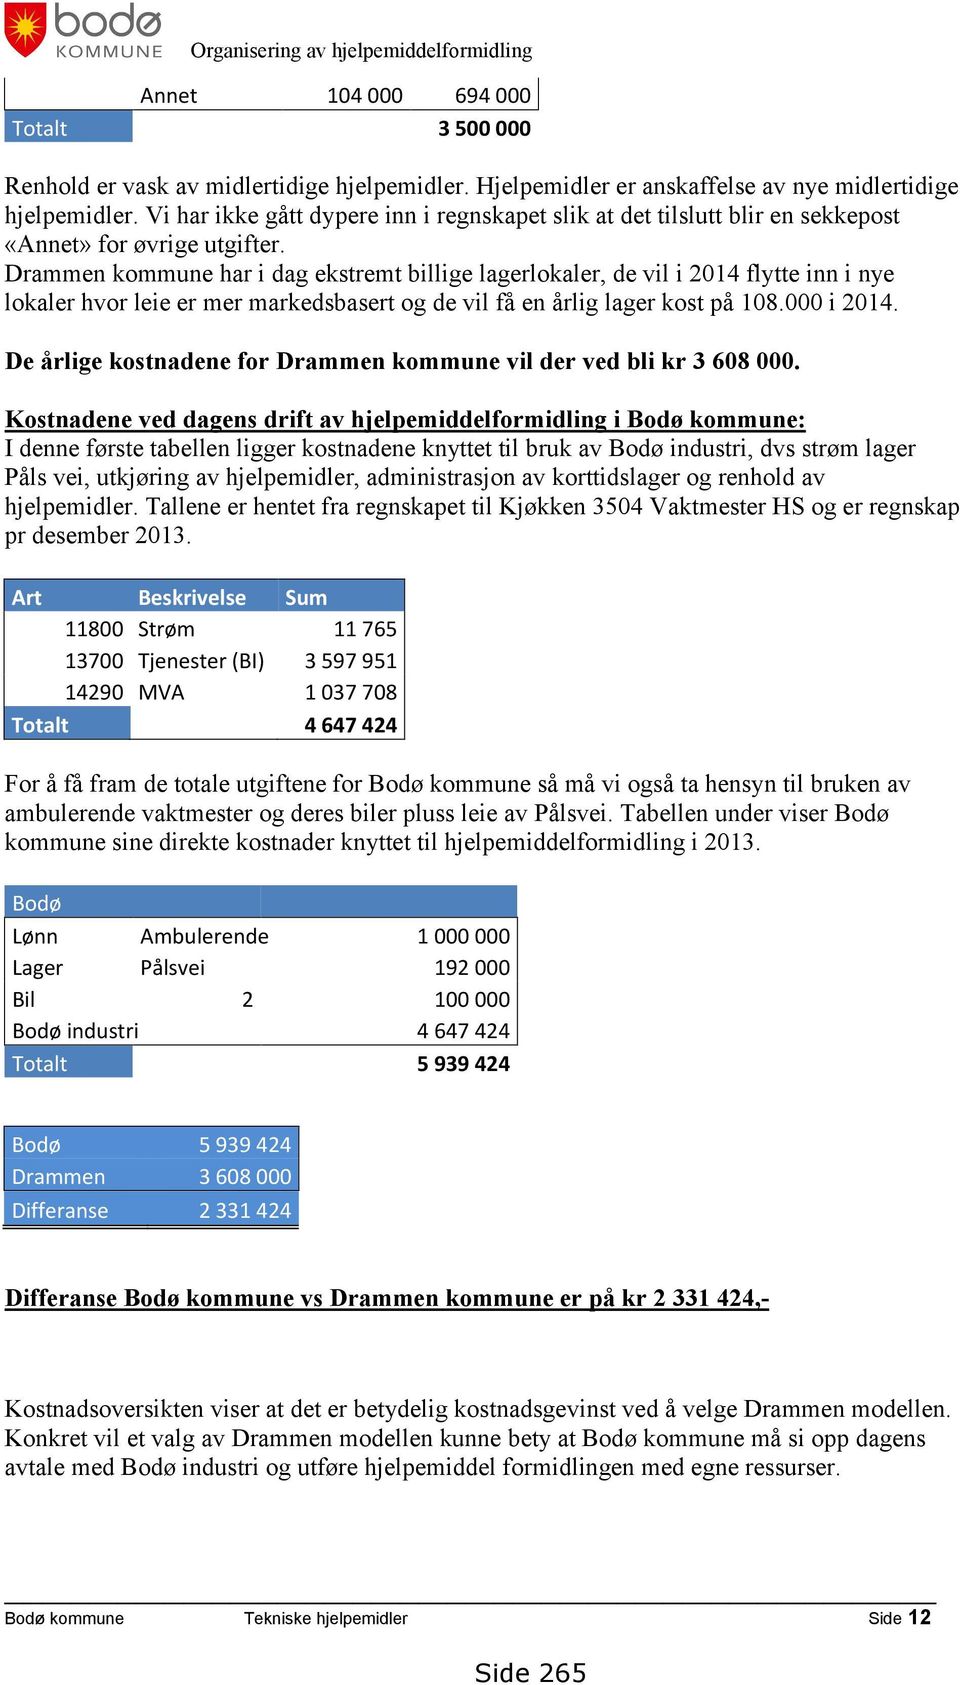 Drammen kommune har i dag ekstremt billige lagerlokaler, de vil i 2014 flytte inn i nye lokaler hvor leie er mer markedsbasert og de vil få en årlig lager kost på 108.000 i 2014.